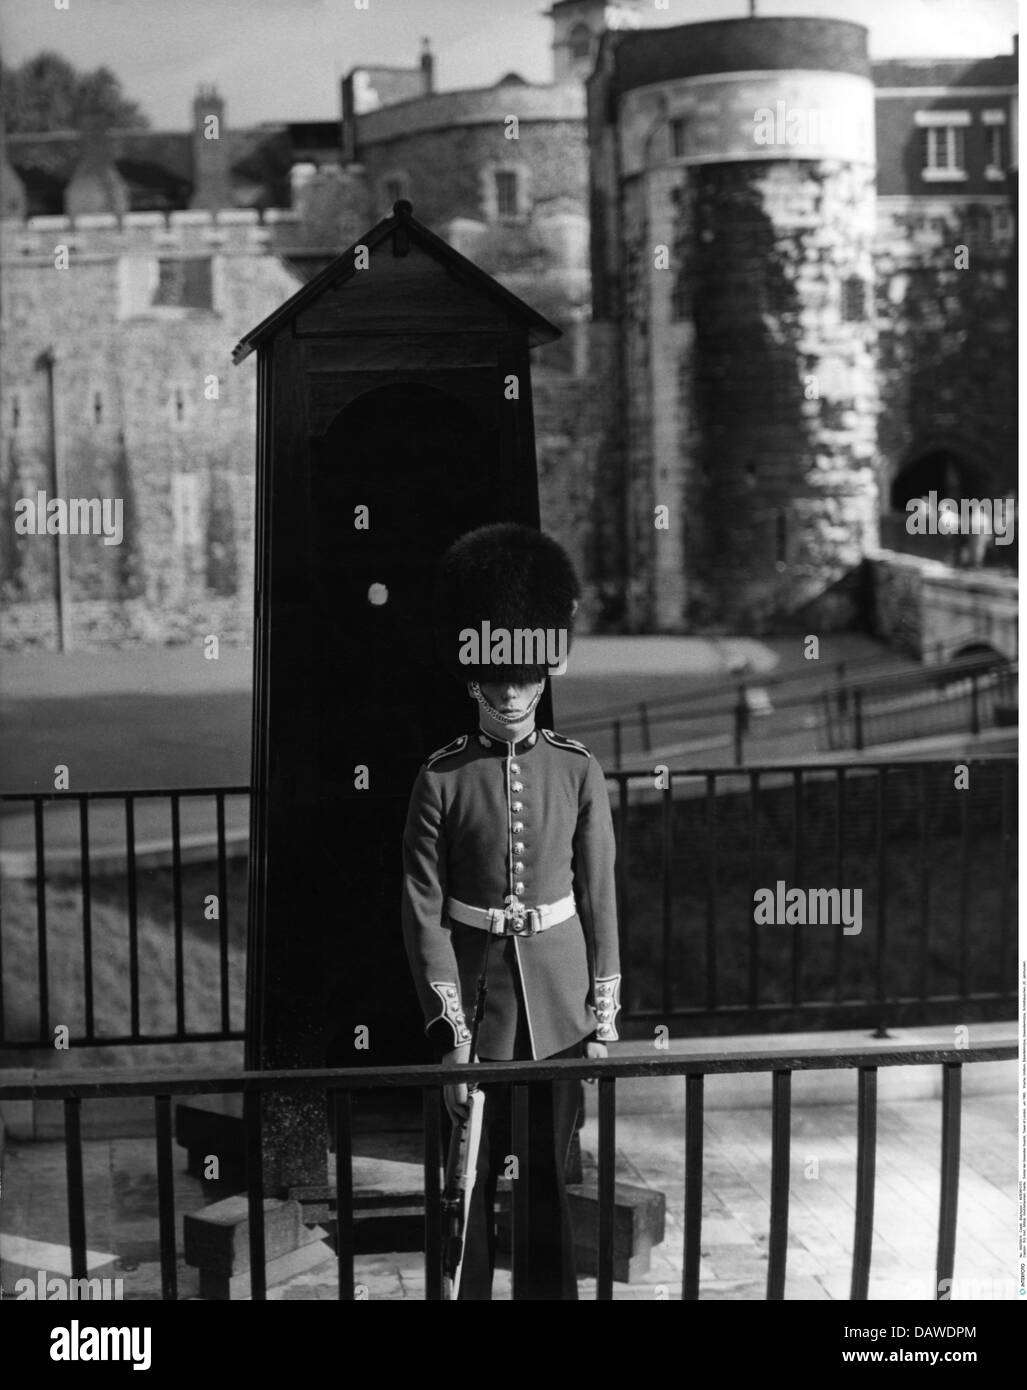 Militaire, Grande-Bretagne, gardes, Grenadier Guard, Tour de Londres, vers 1960, droits additionnels-Clearences-non disponible Banque D'Images